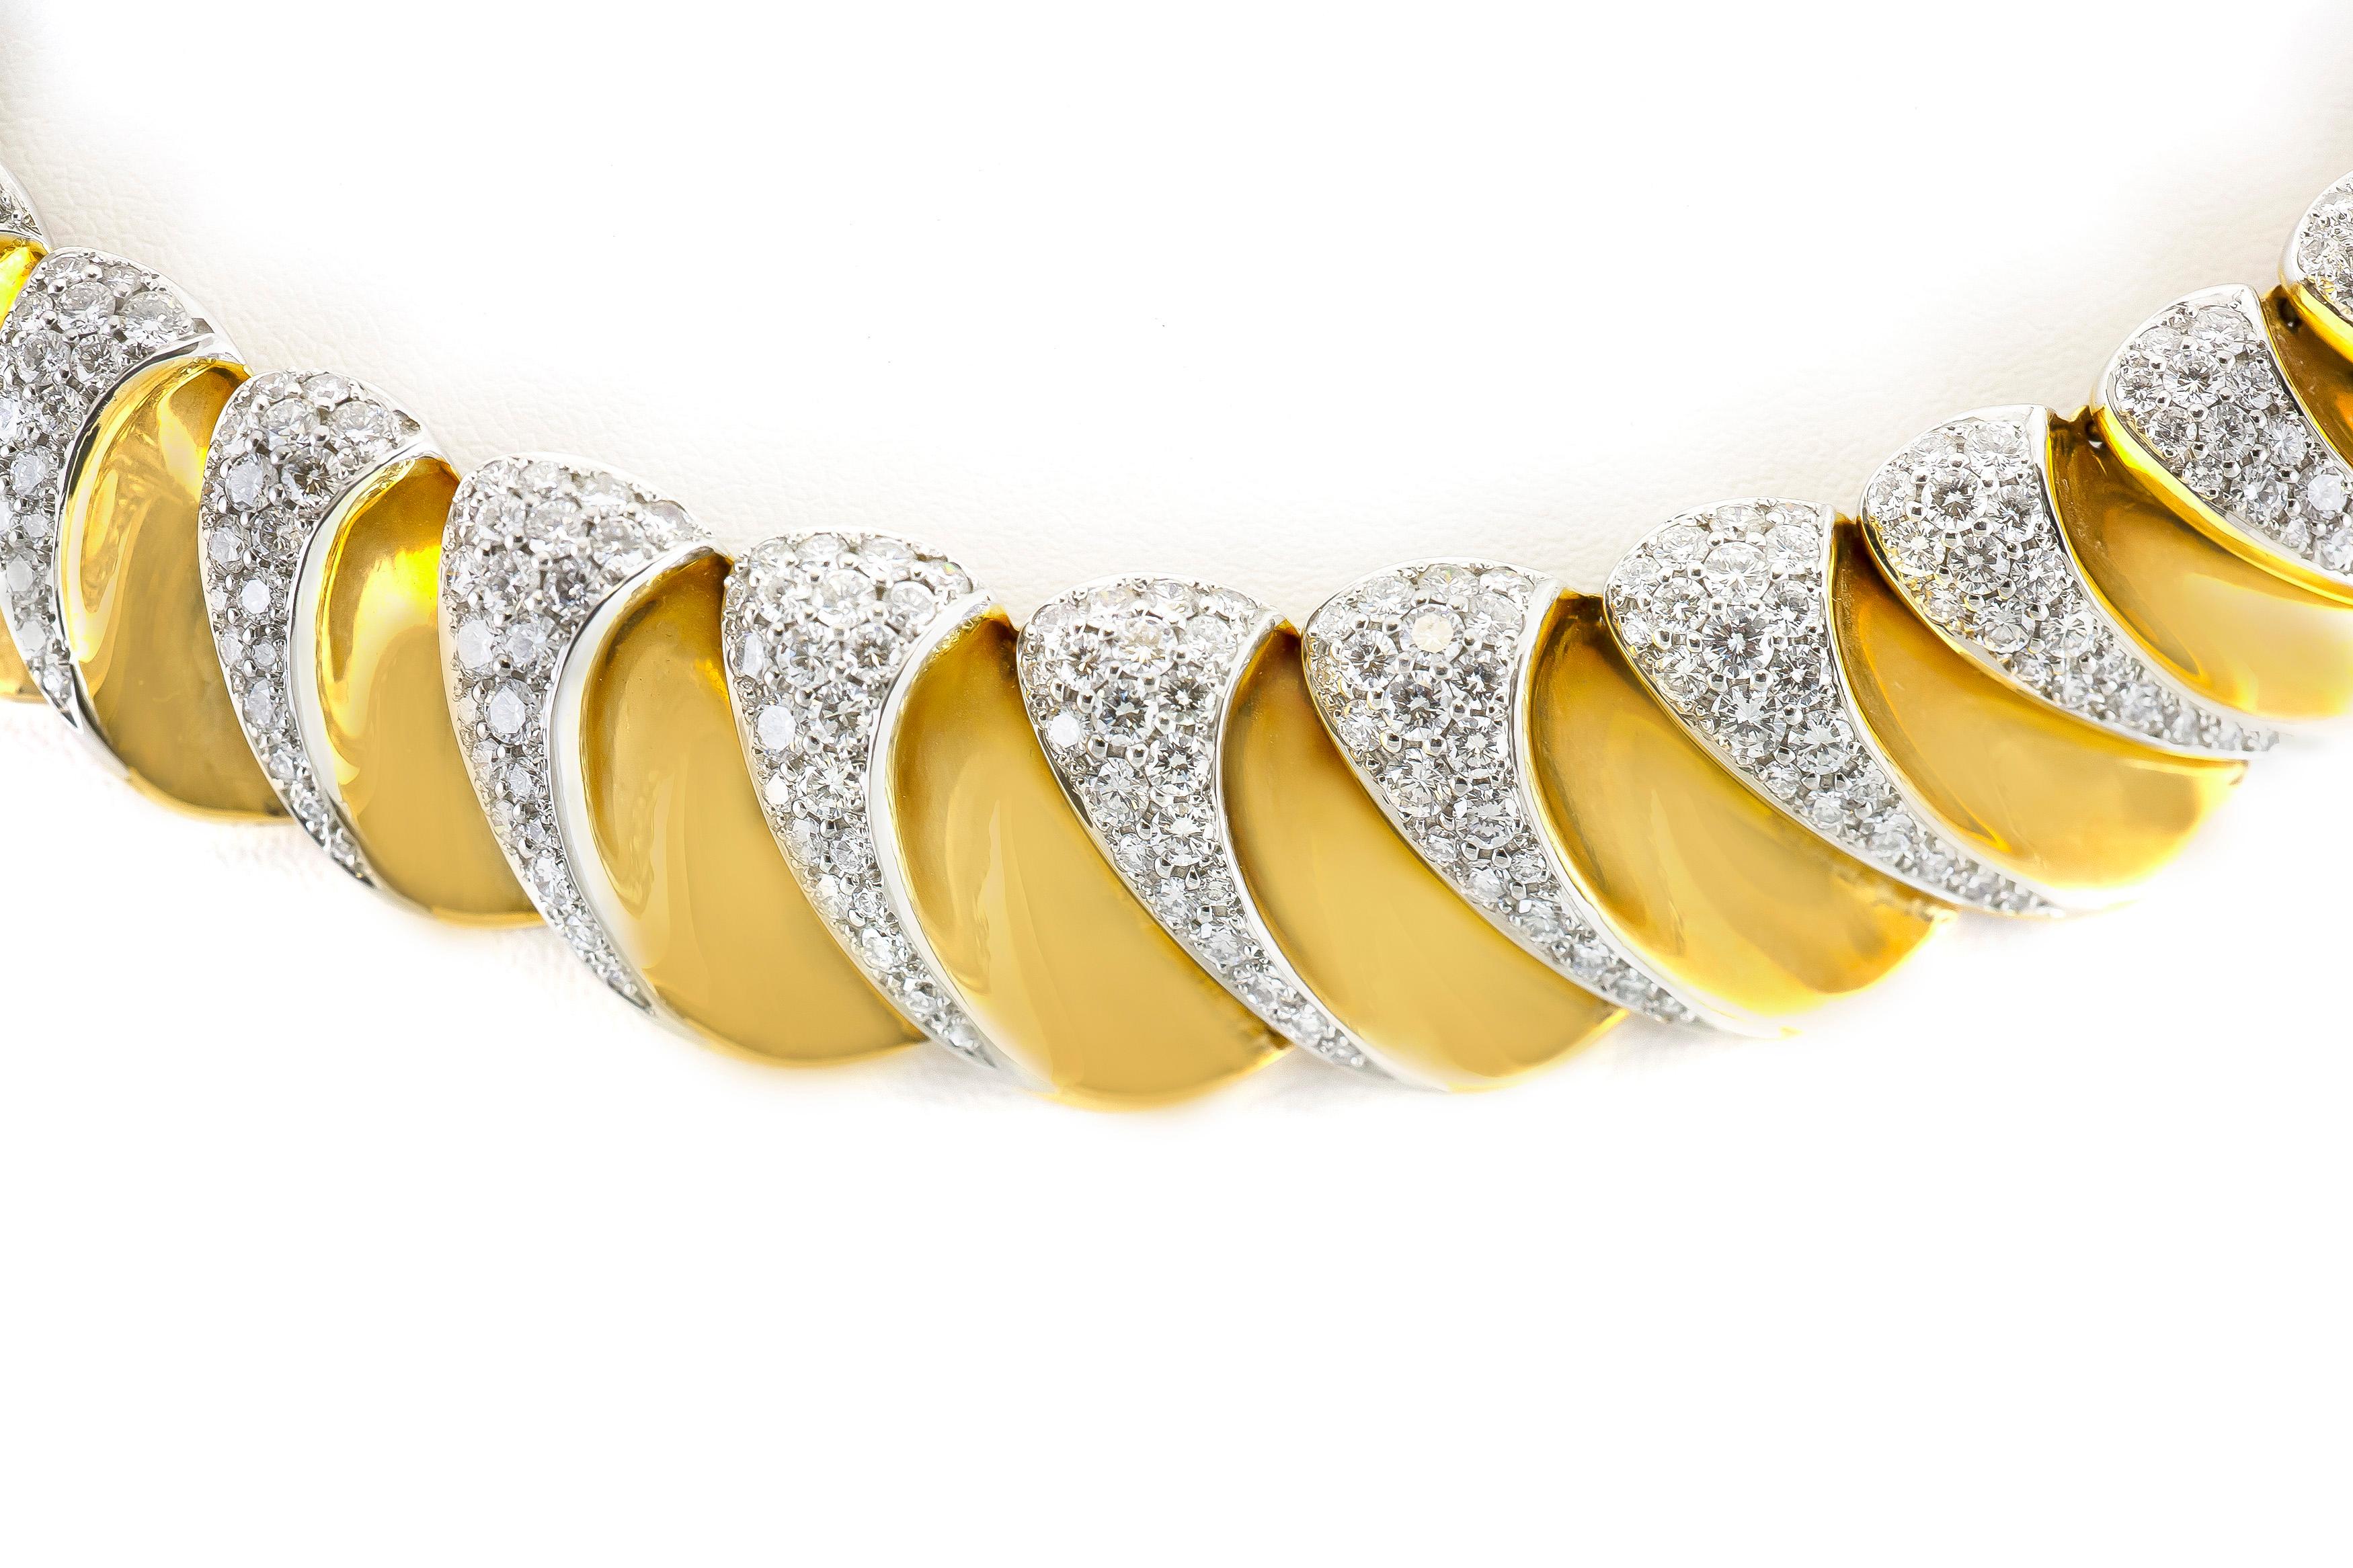 Die Halskette ist fein in 18 Karat Gelbgold mit Diamanten auf der Vorderseite mit einem Gesamtgewicht von etwa 15,00 Karat gefertigt. 
Die Halskette wiegt ungefähr insgesamt 127 Gramm.